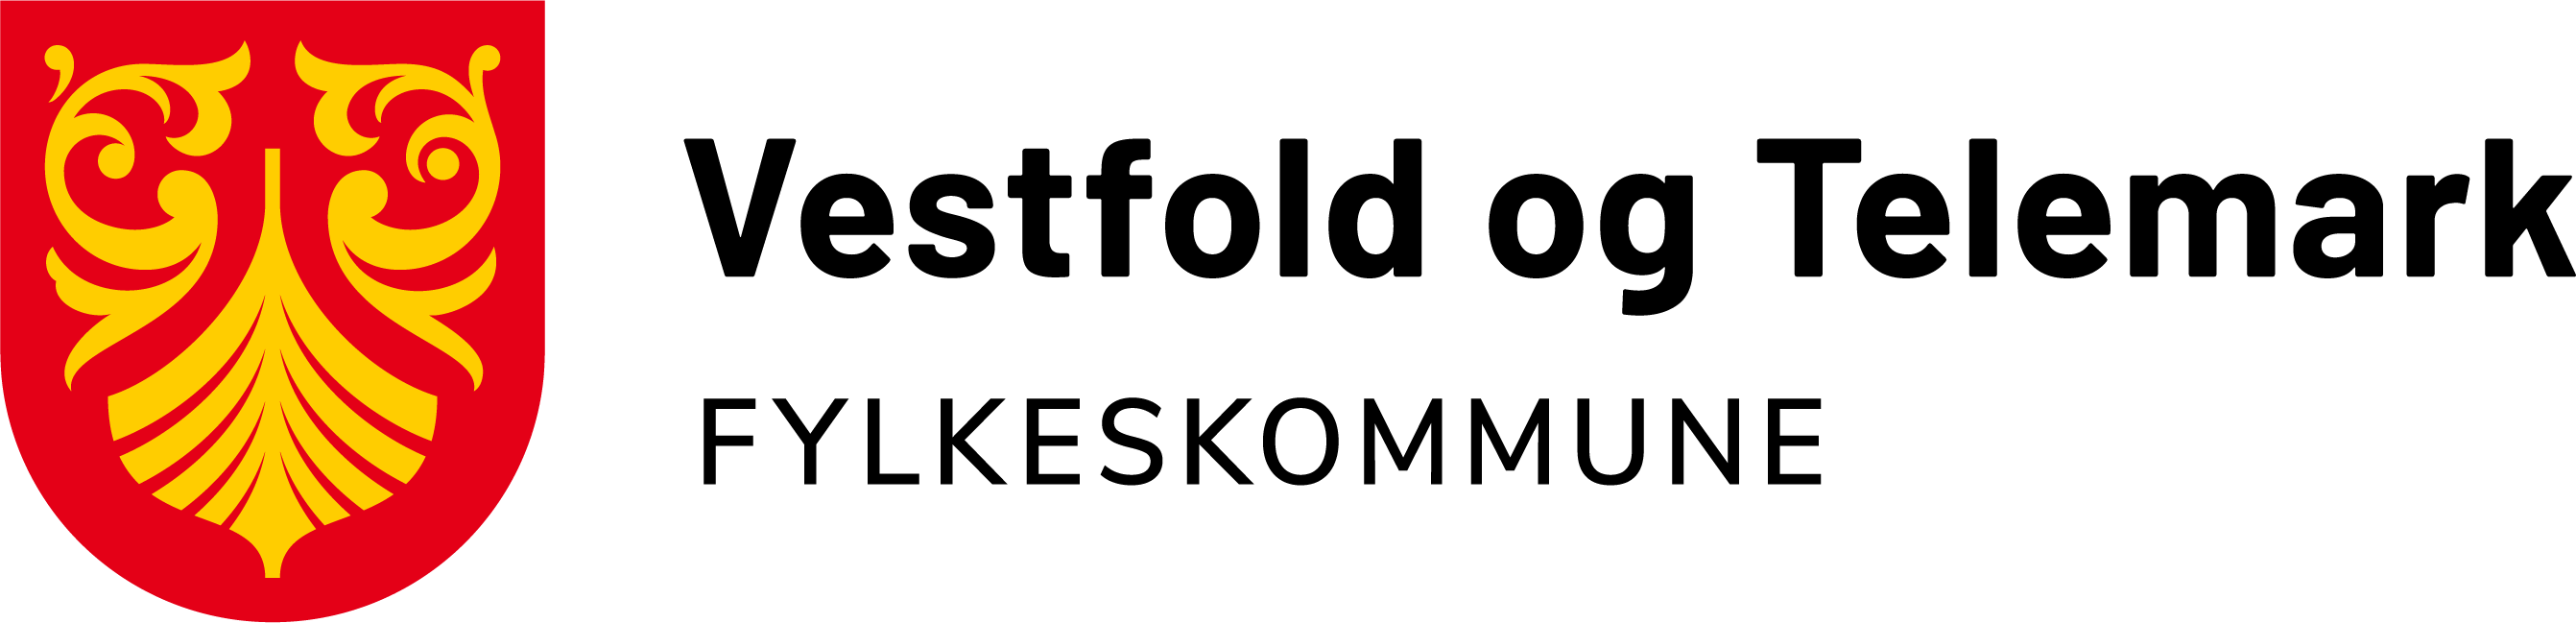 Bane Nor logo